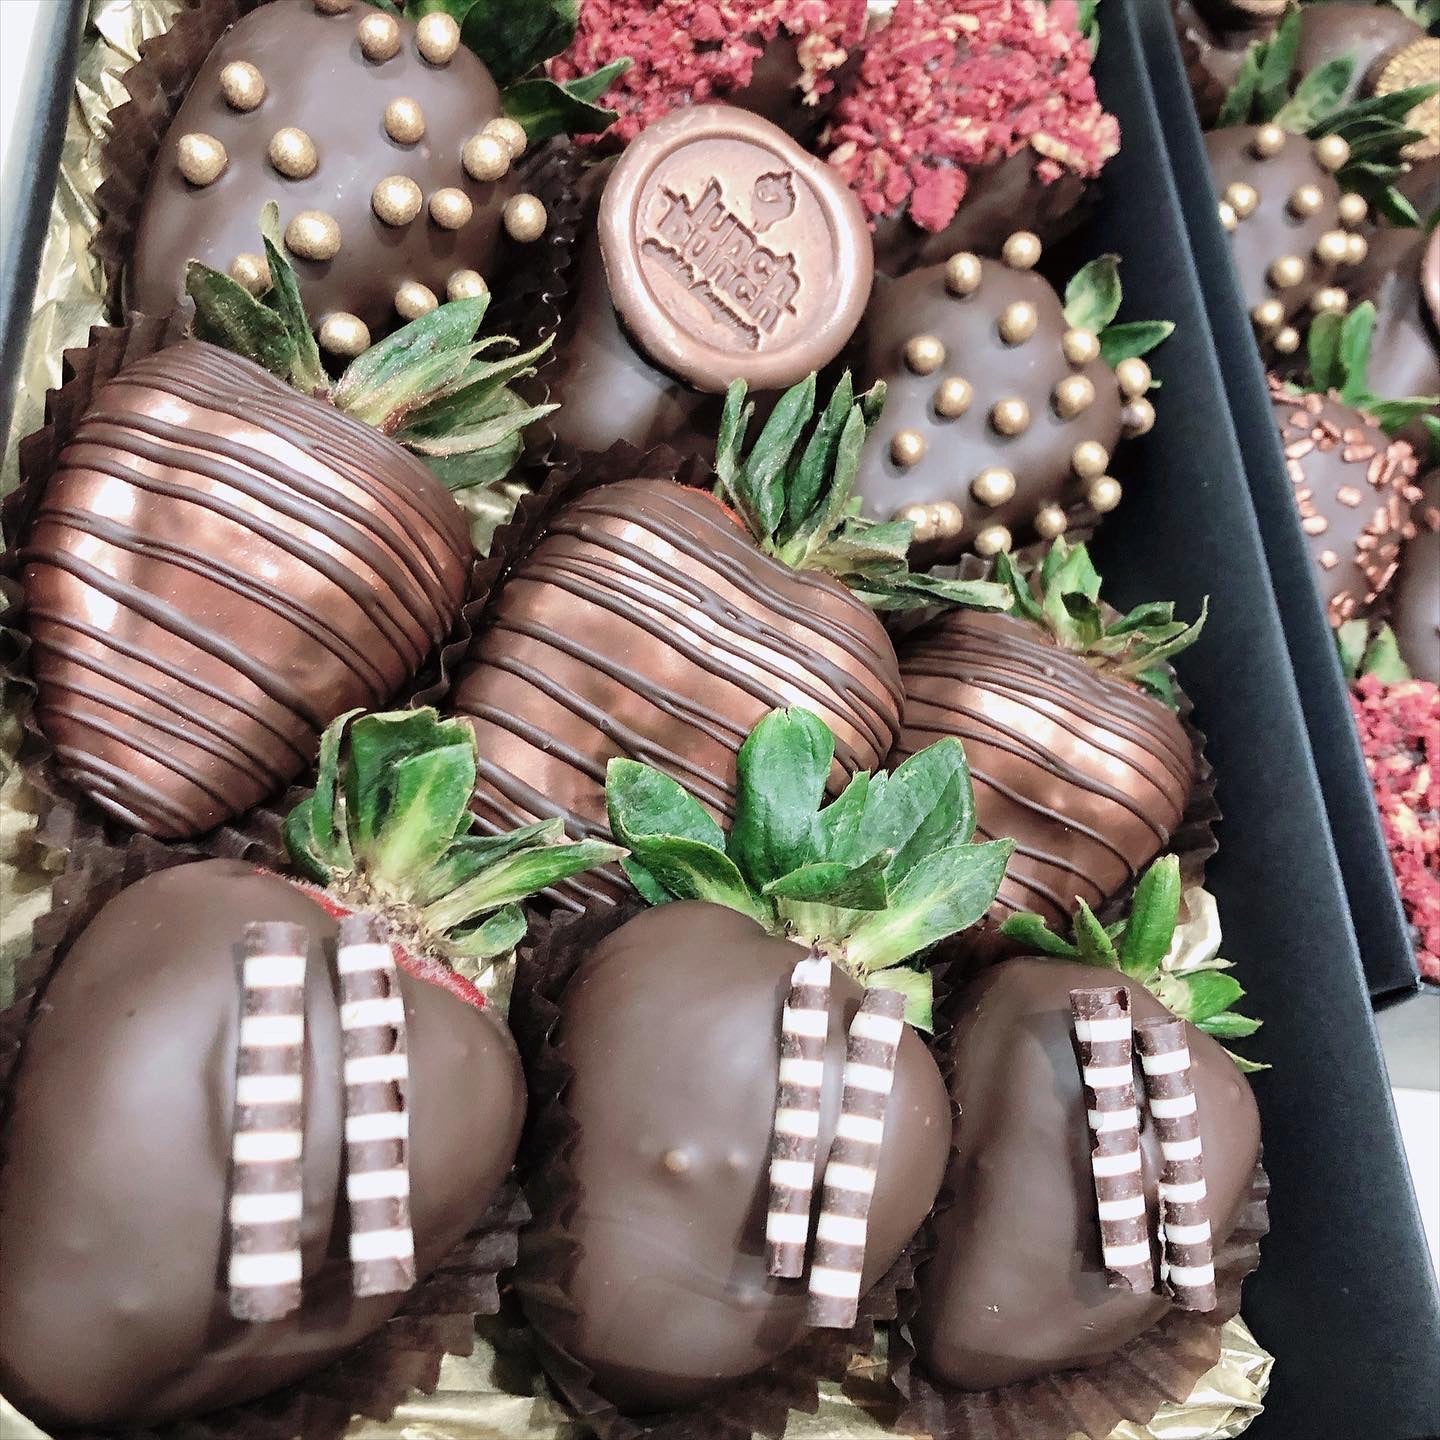 Small box of chocolate covered strawberries in dark vegan chocolate